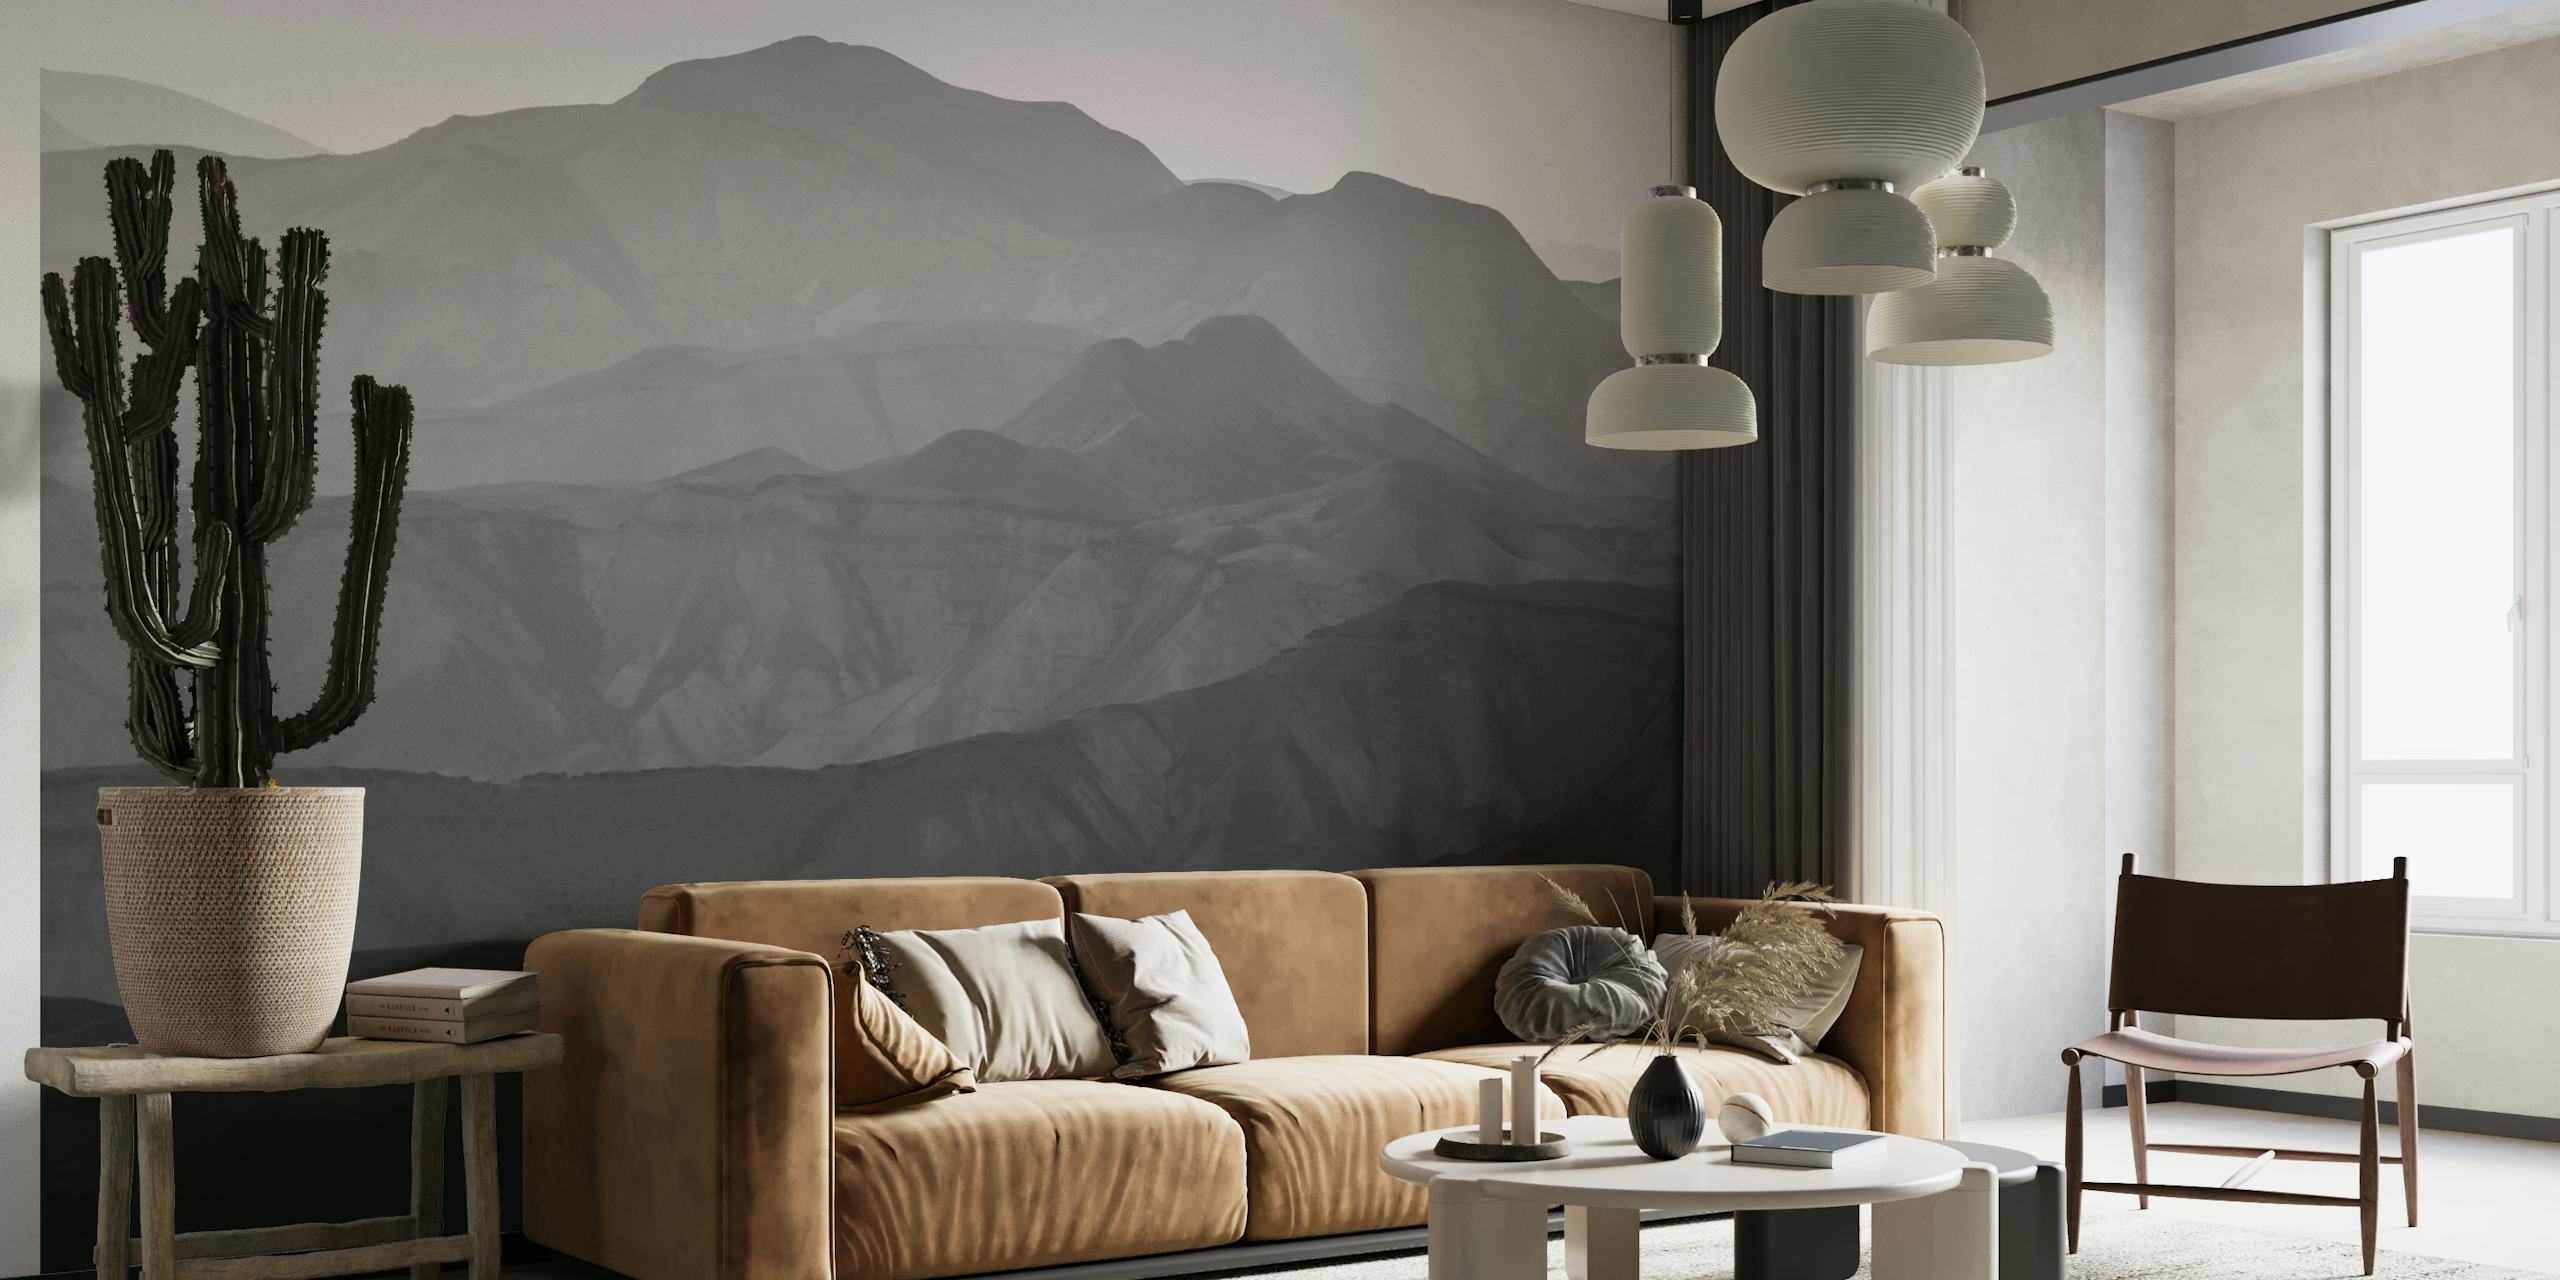 Jednobojni zidni mural s planinama Judejske pustinje koji unosi mir u interijer